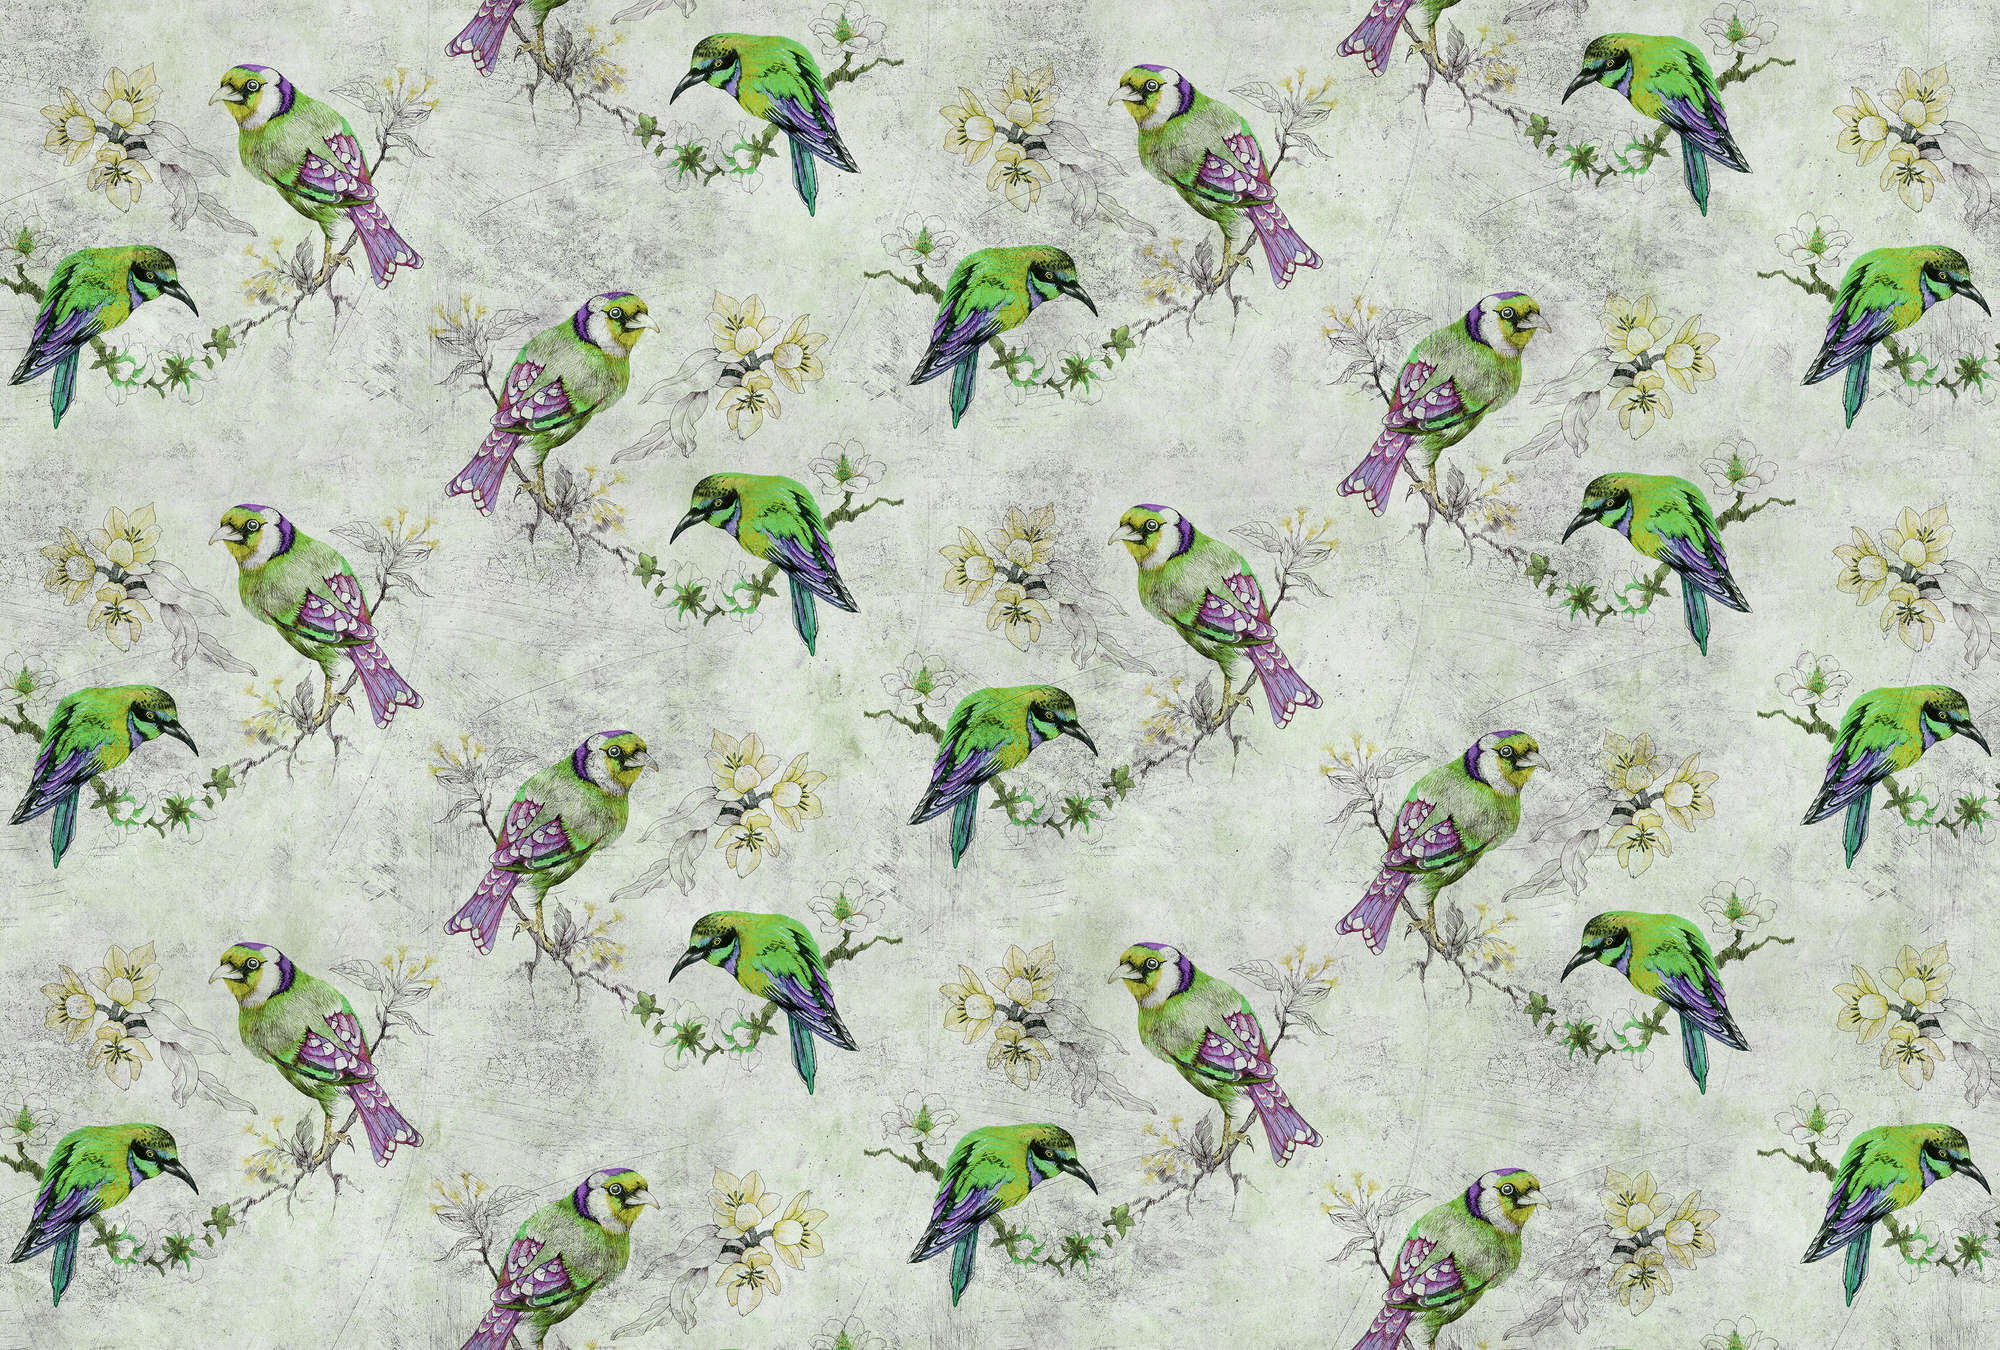             Love birds 2 - Papier peint coloré à texture craquelée avec des oiseaux esquissés - gris, vert | intissé lisse nacré
        